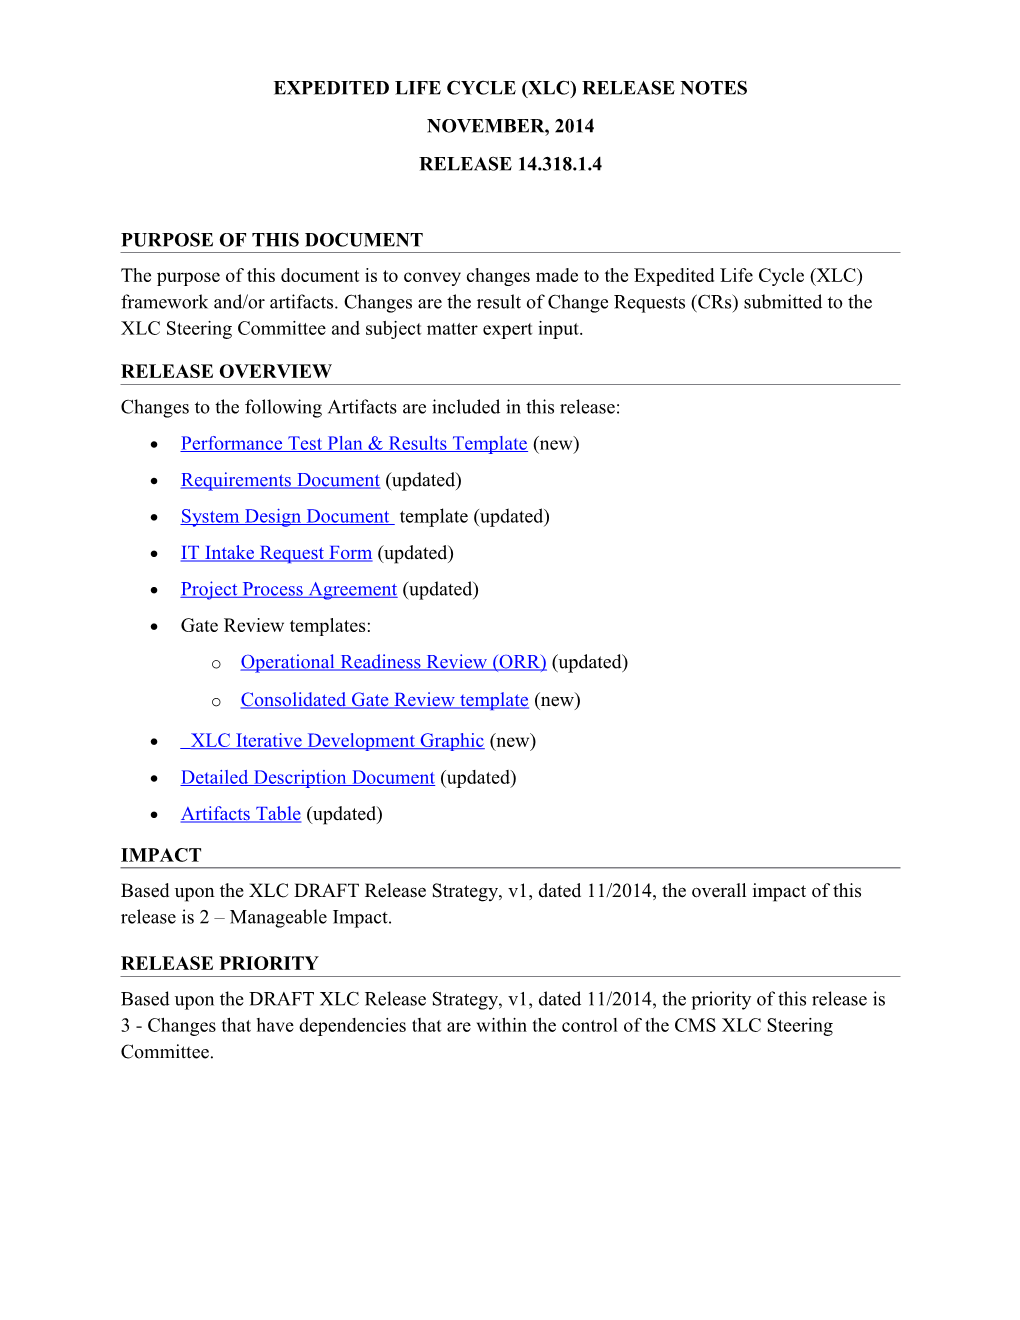 Release Notes - CMS XLC Nov2014